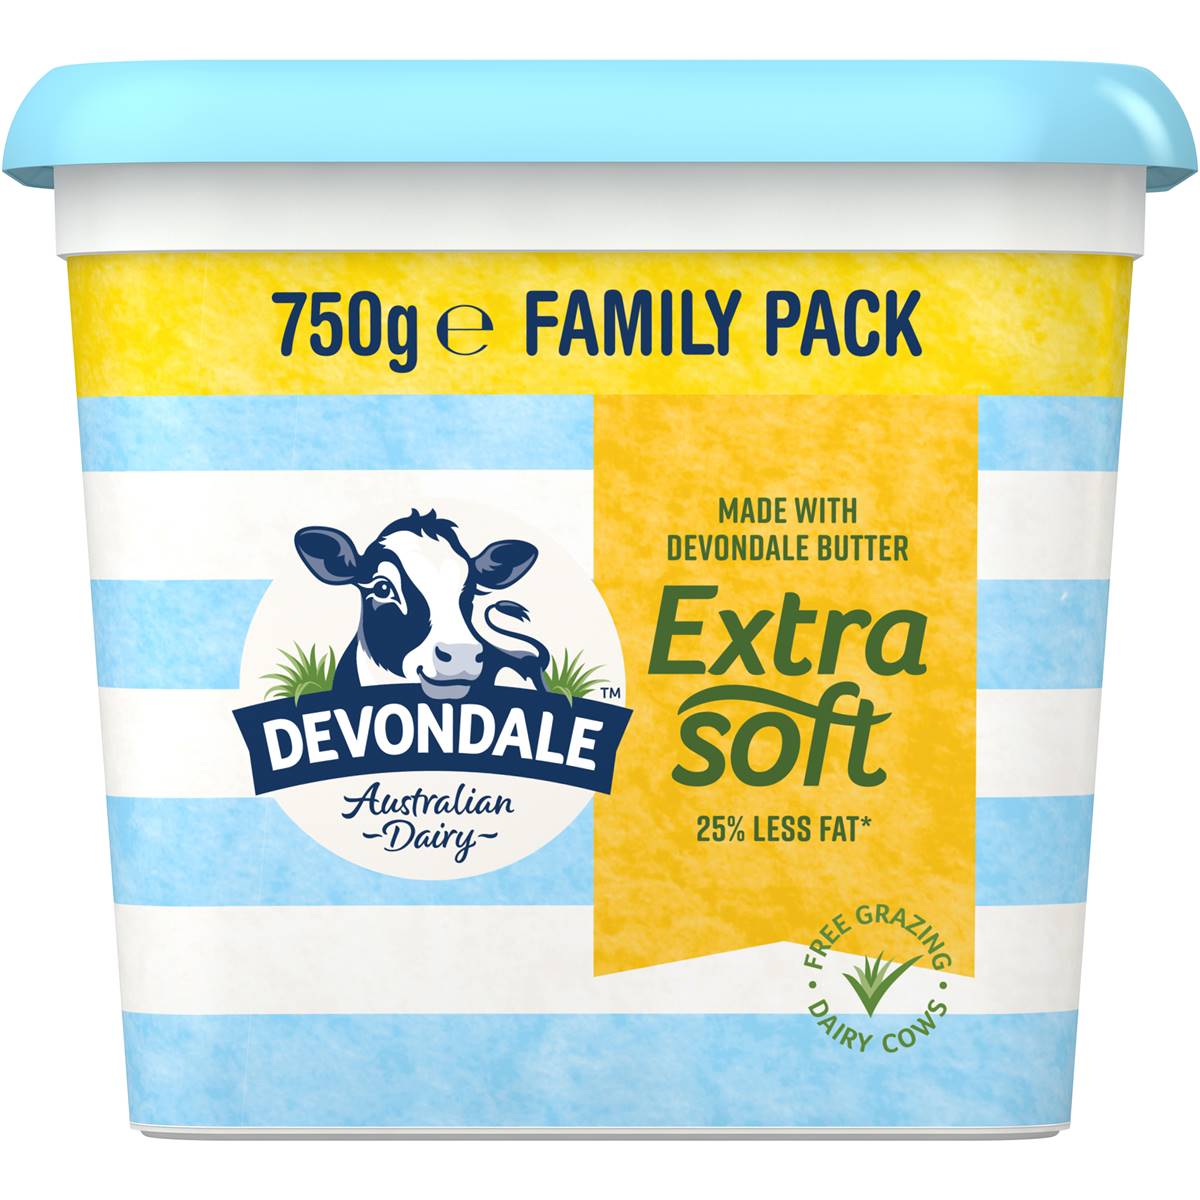 Devondale Extra Soft Butter Family Pack 750g